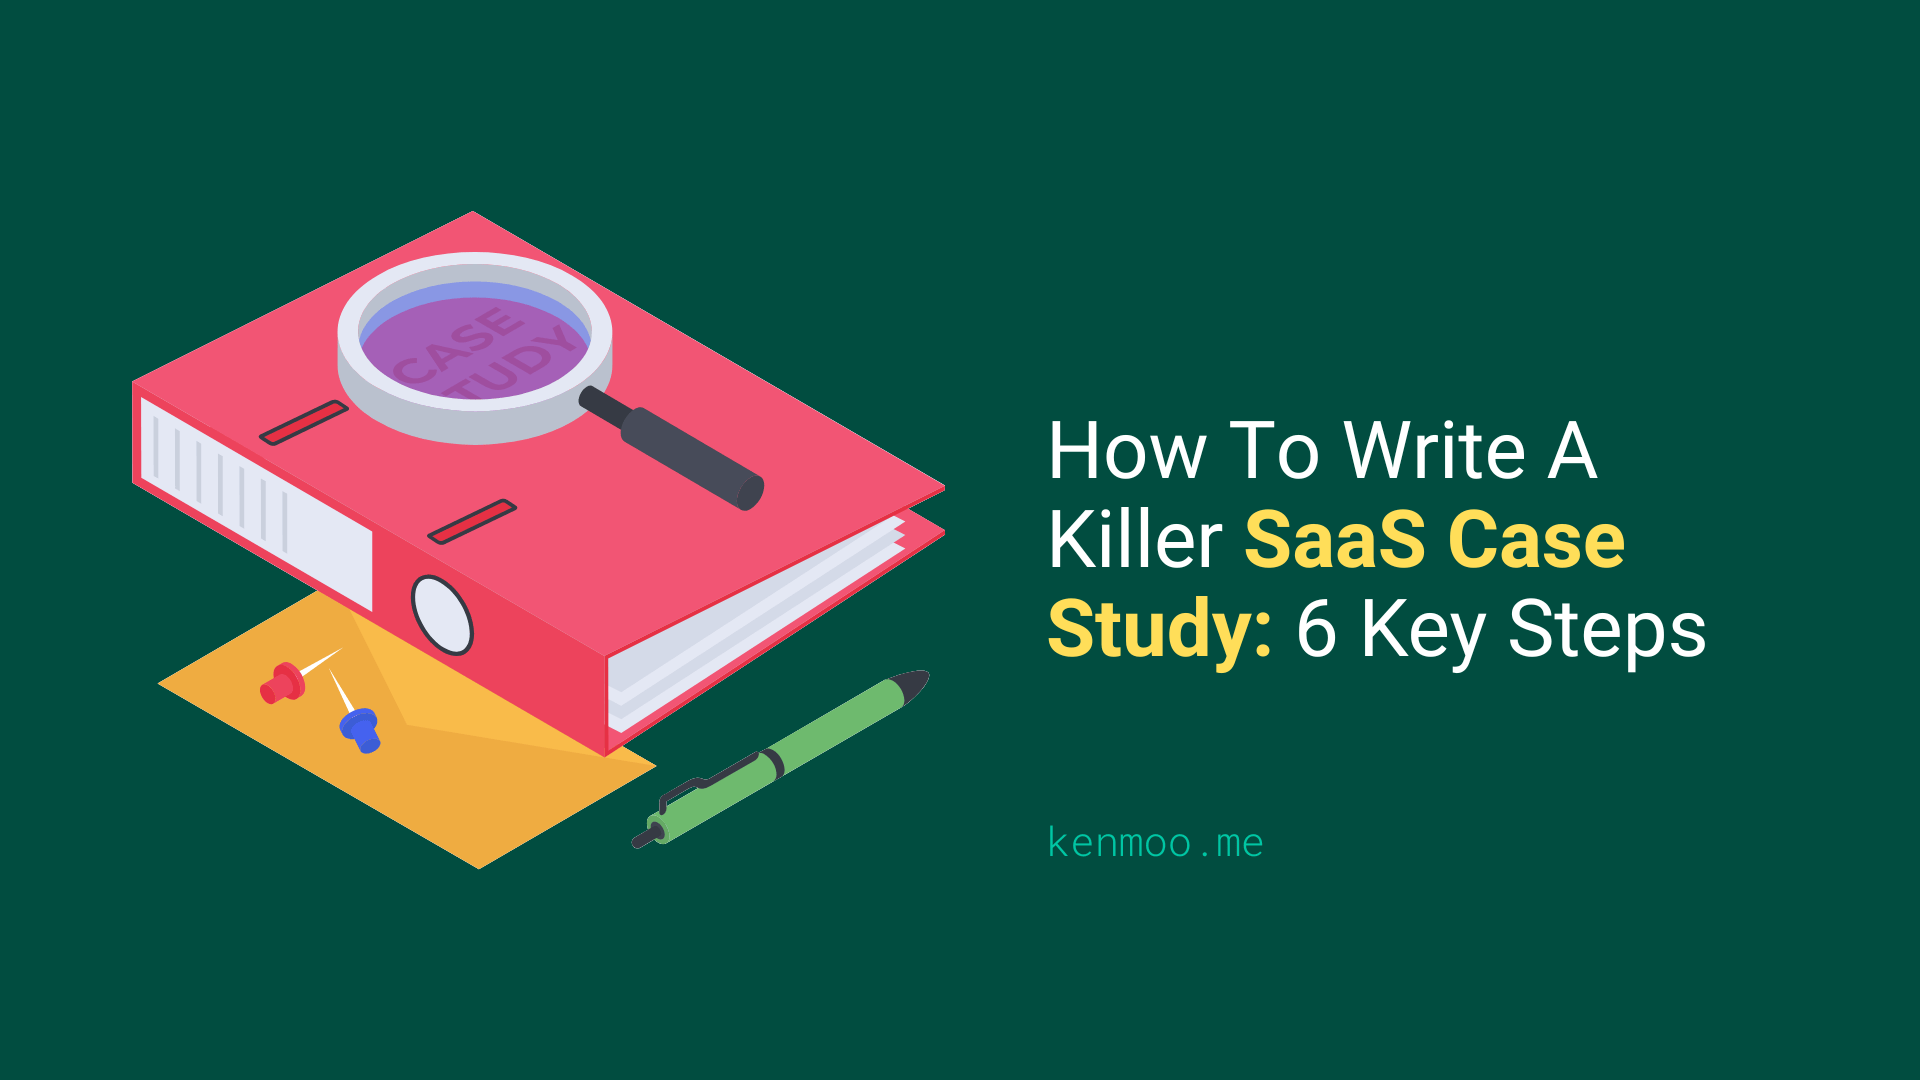 How To Write A Killer SaaS Case Study: 6 Key Steps